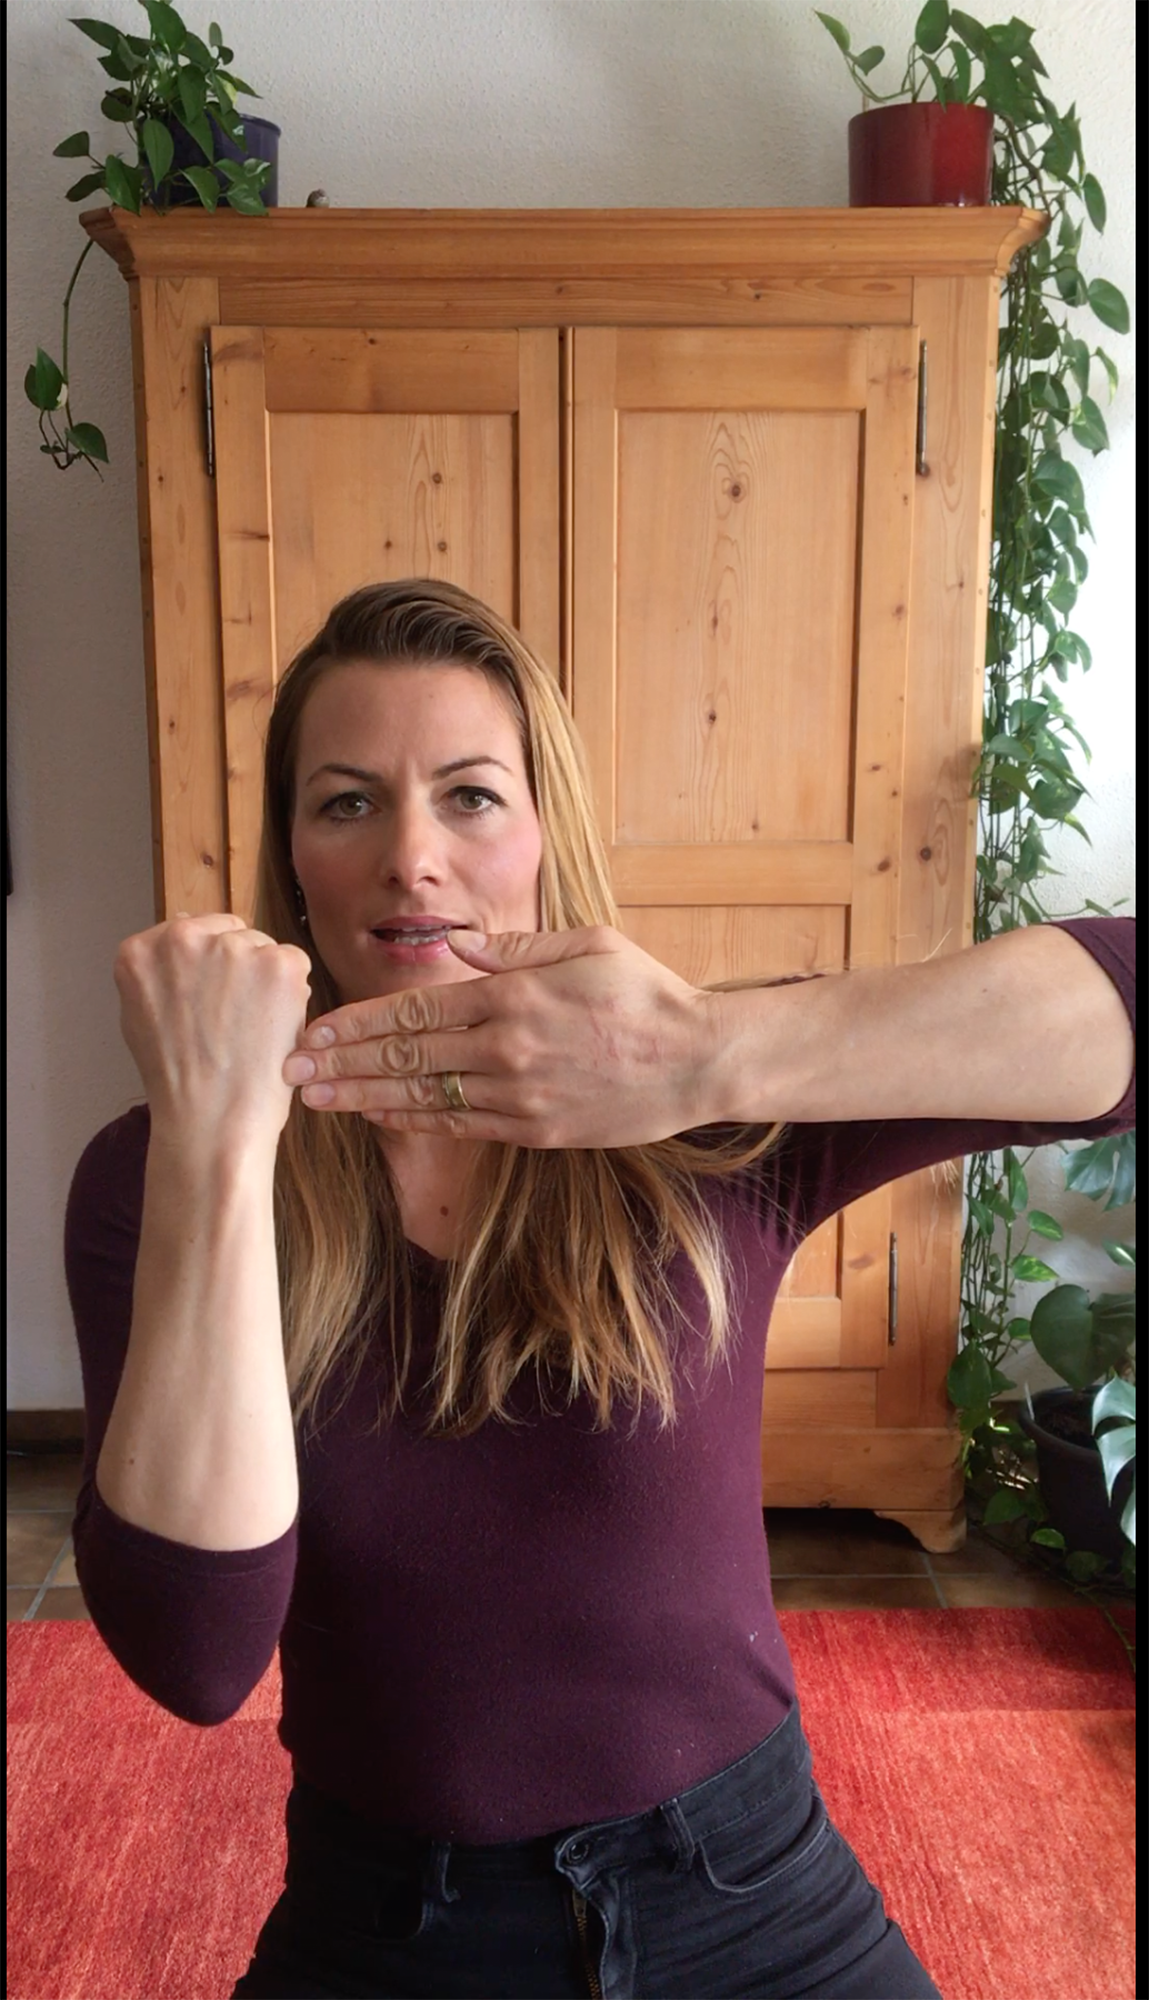 Dr. Barbara Studer demonstriert im eigenen Homeoffice eine der Übungen von “Hirncoach.ch” (Screenshot). Bild: zvg